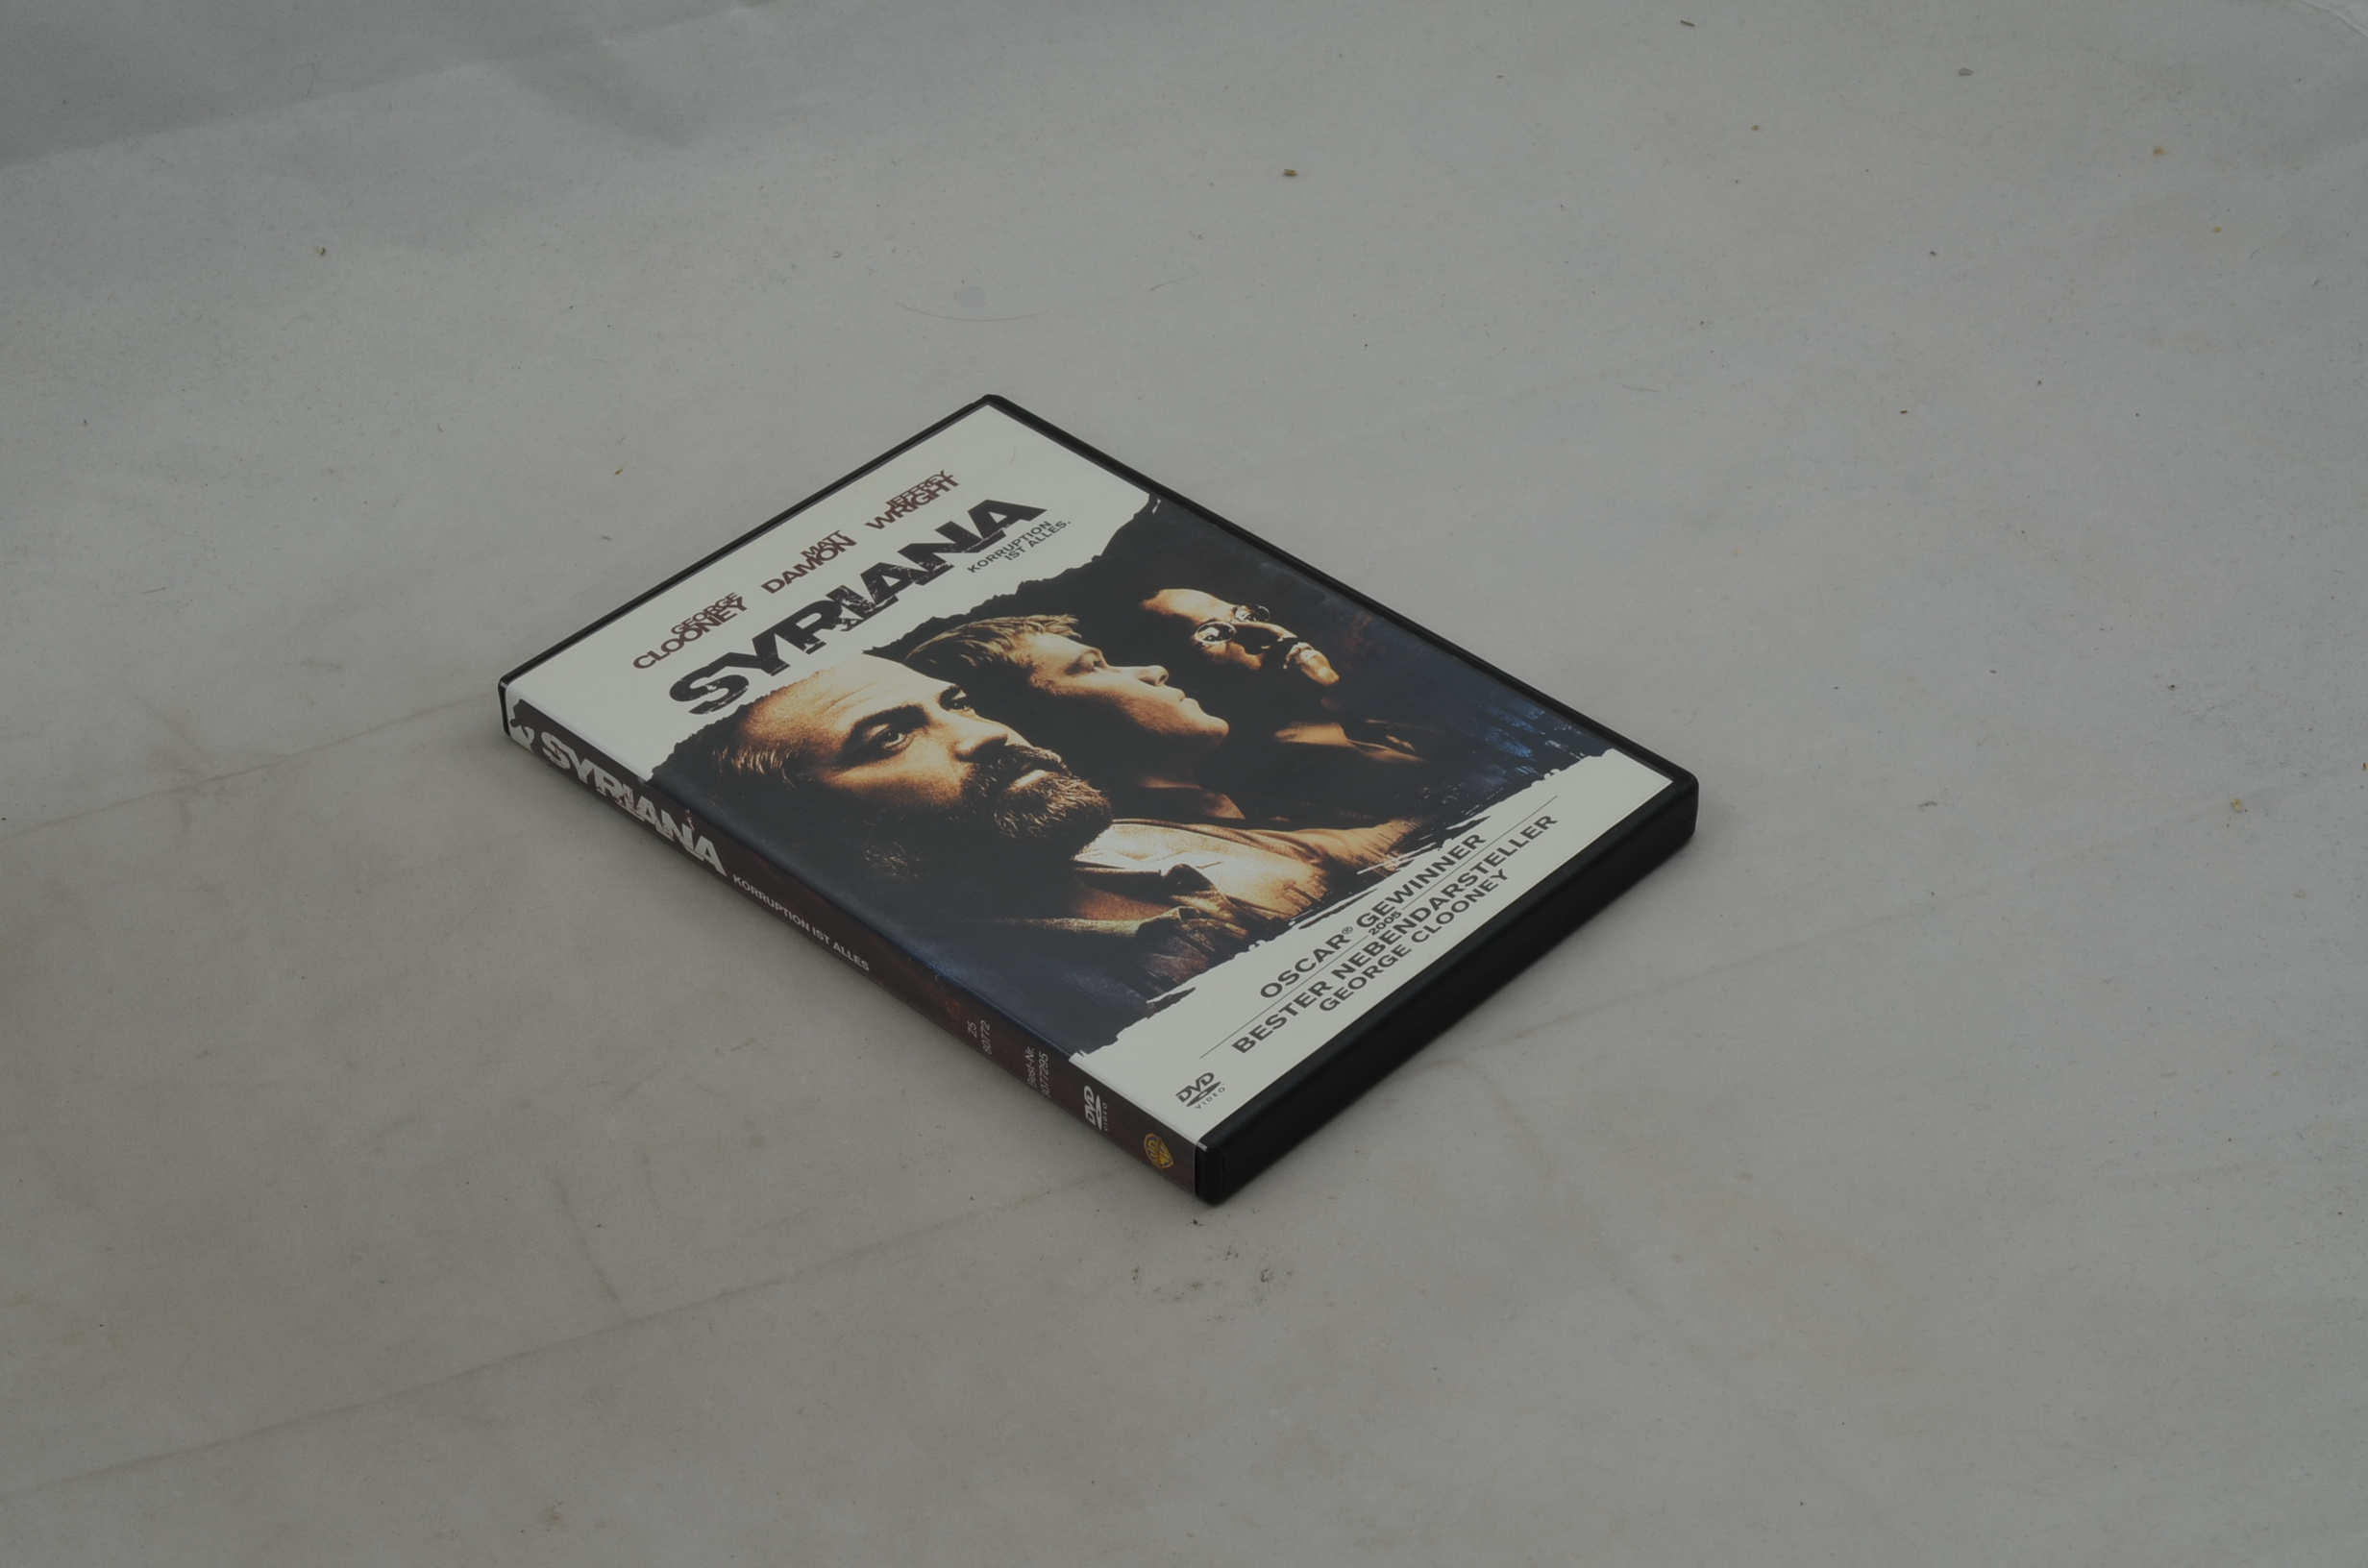 Produktbild von Syriana - Korruption ist alles DVD-Film